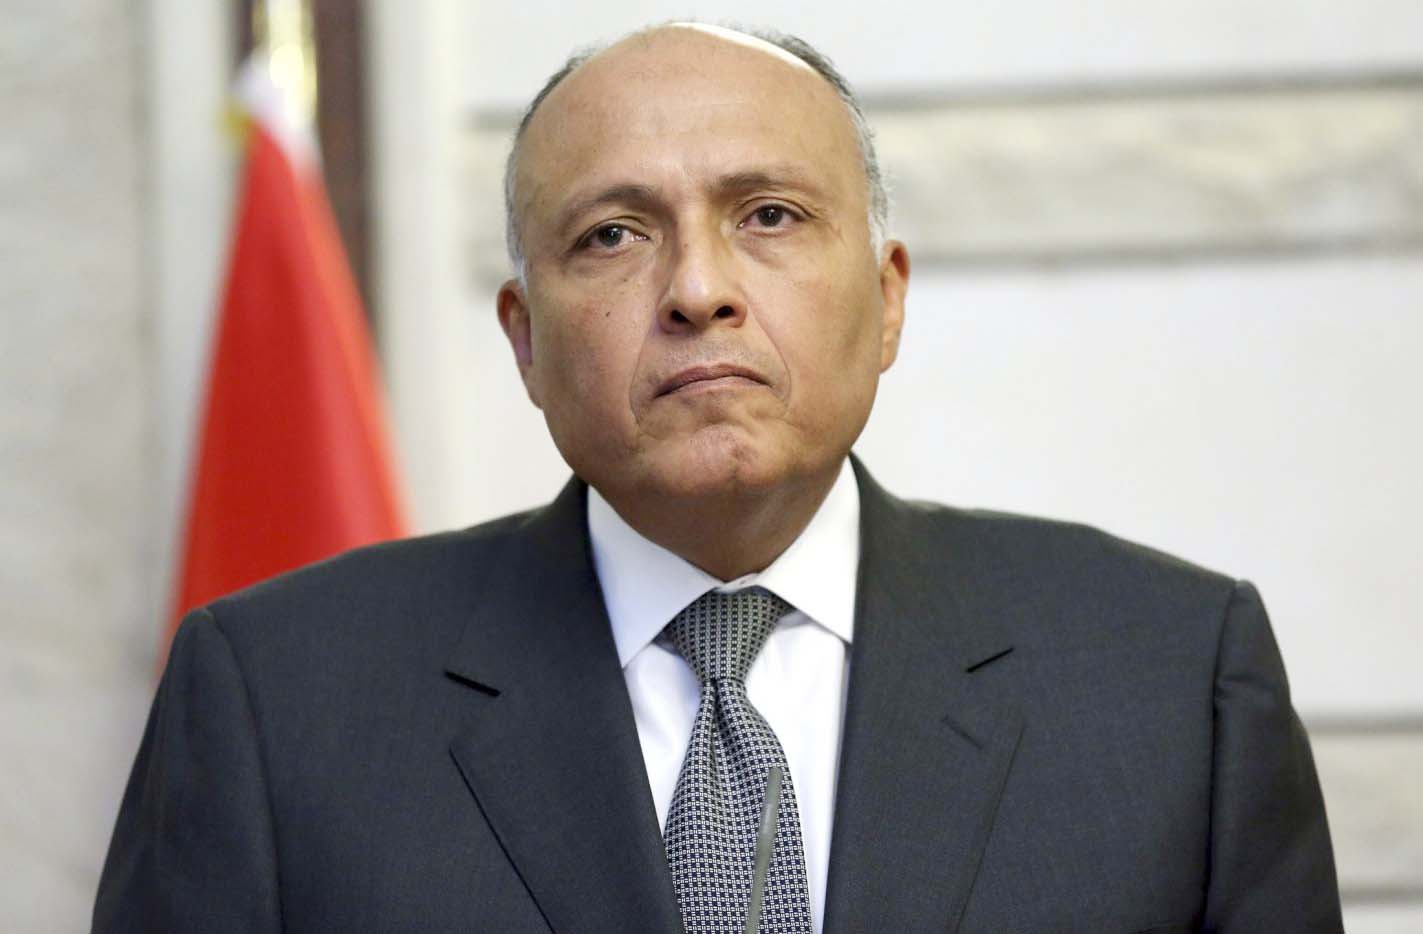   وزير الخارجية يتوجه إلى العراق لبحث العلاقات الثنائية والأوضاع في المنطقة